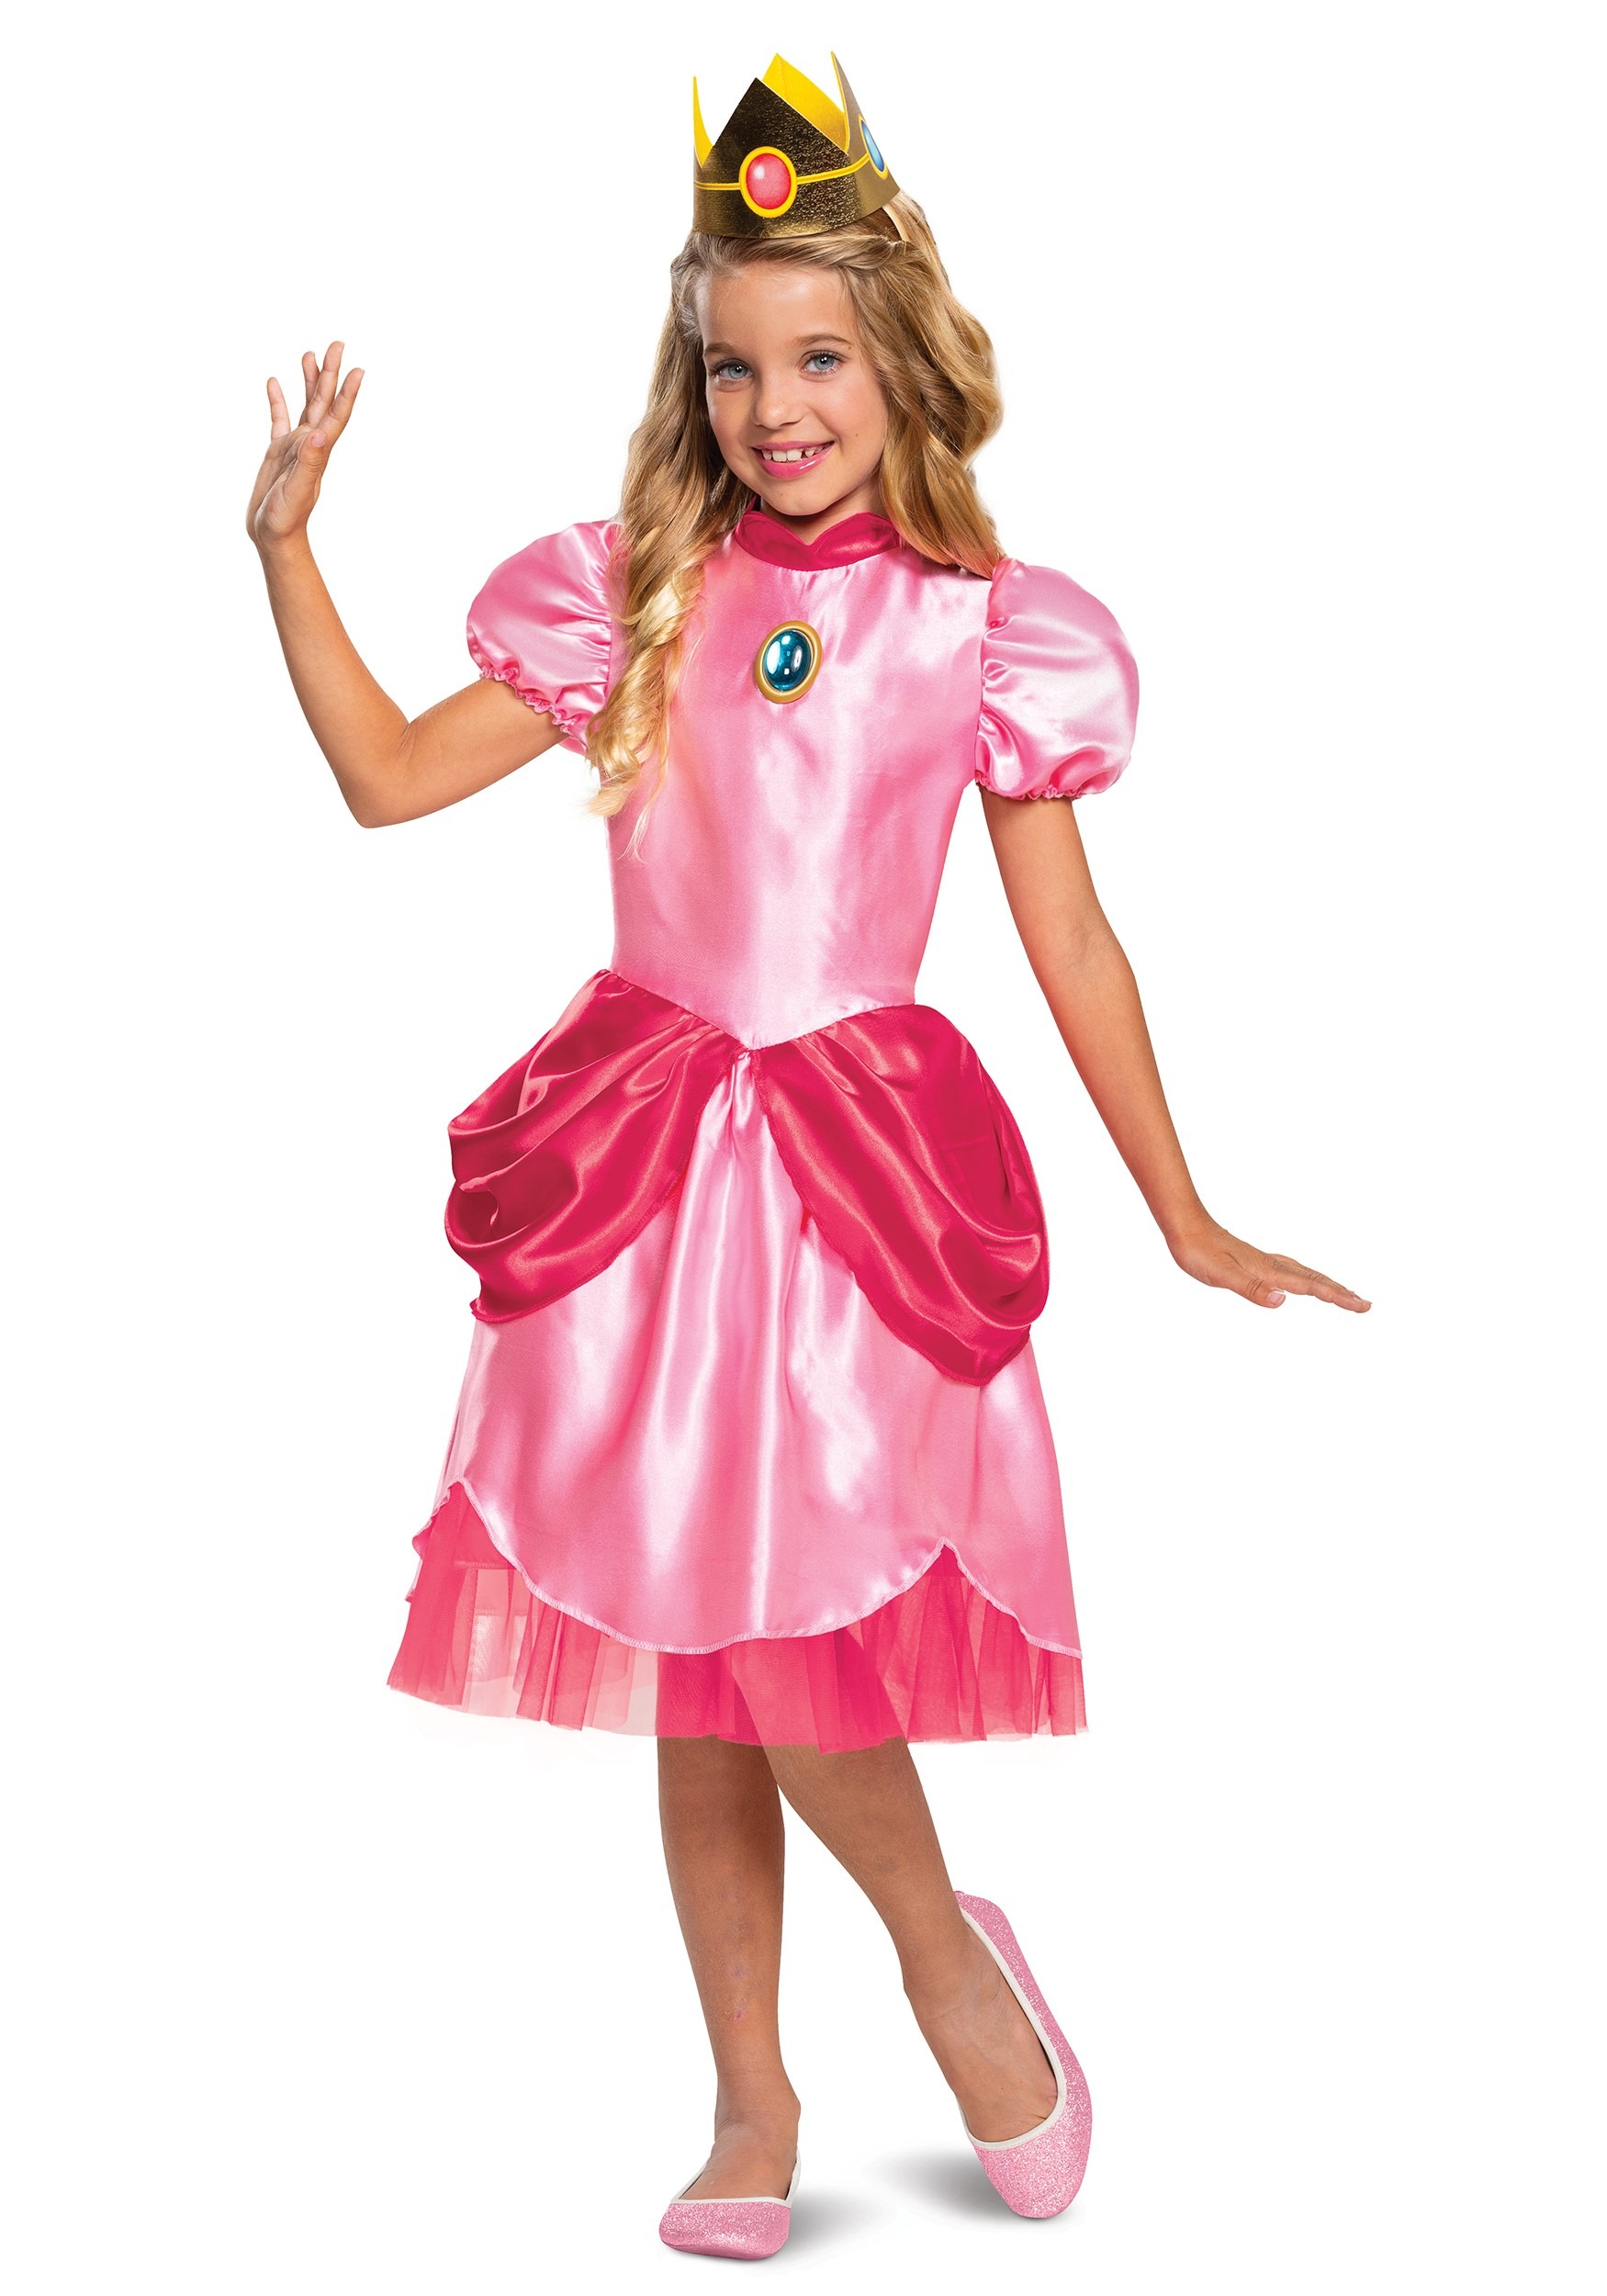 即納国産 Girls Super Mario Deluxe Princess Peach Costume Size 14 16[並行輸入品] Sd00041431 輸入雑貨のサニーネット1号